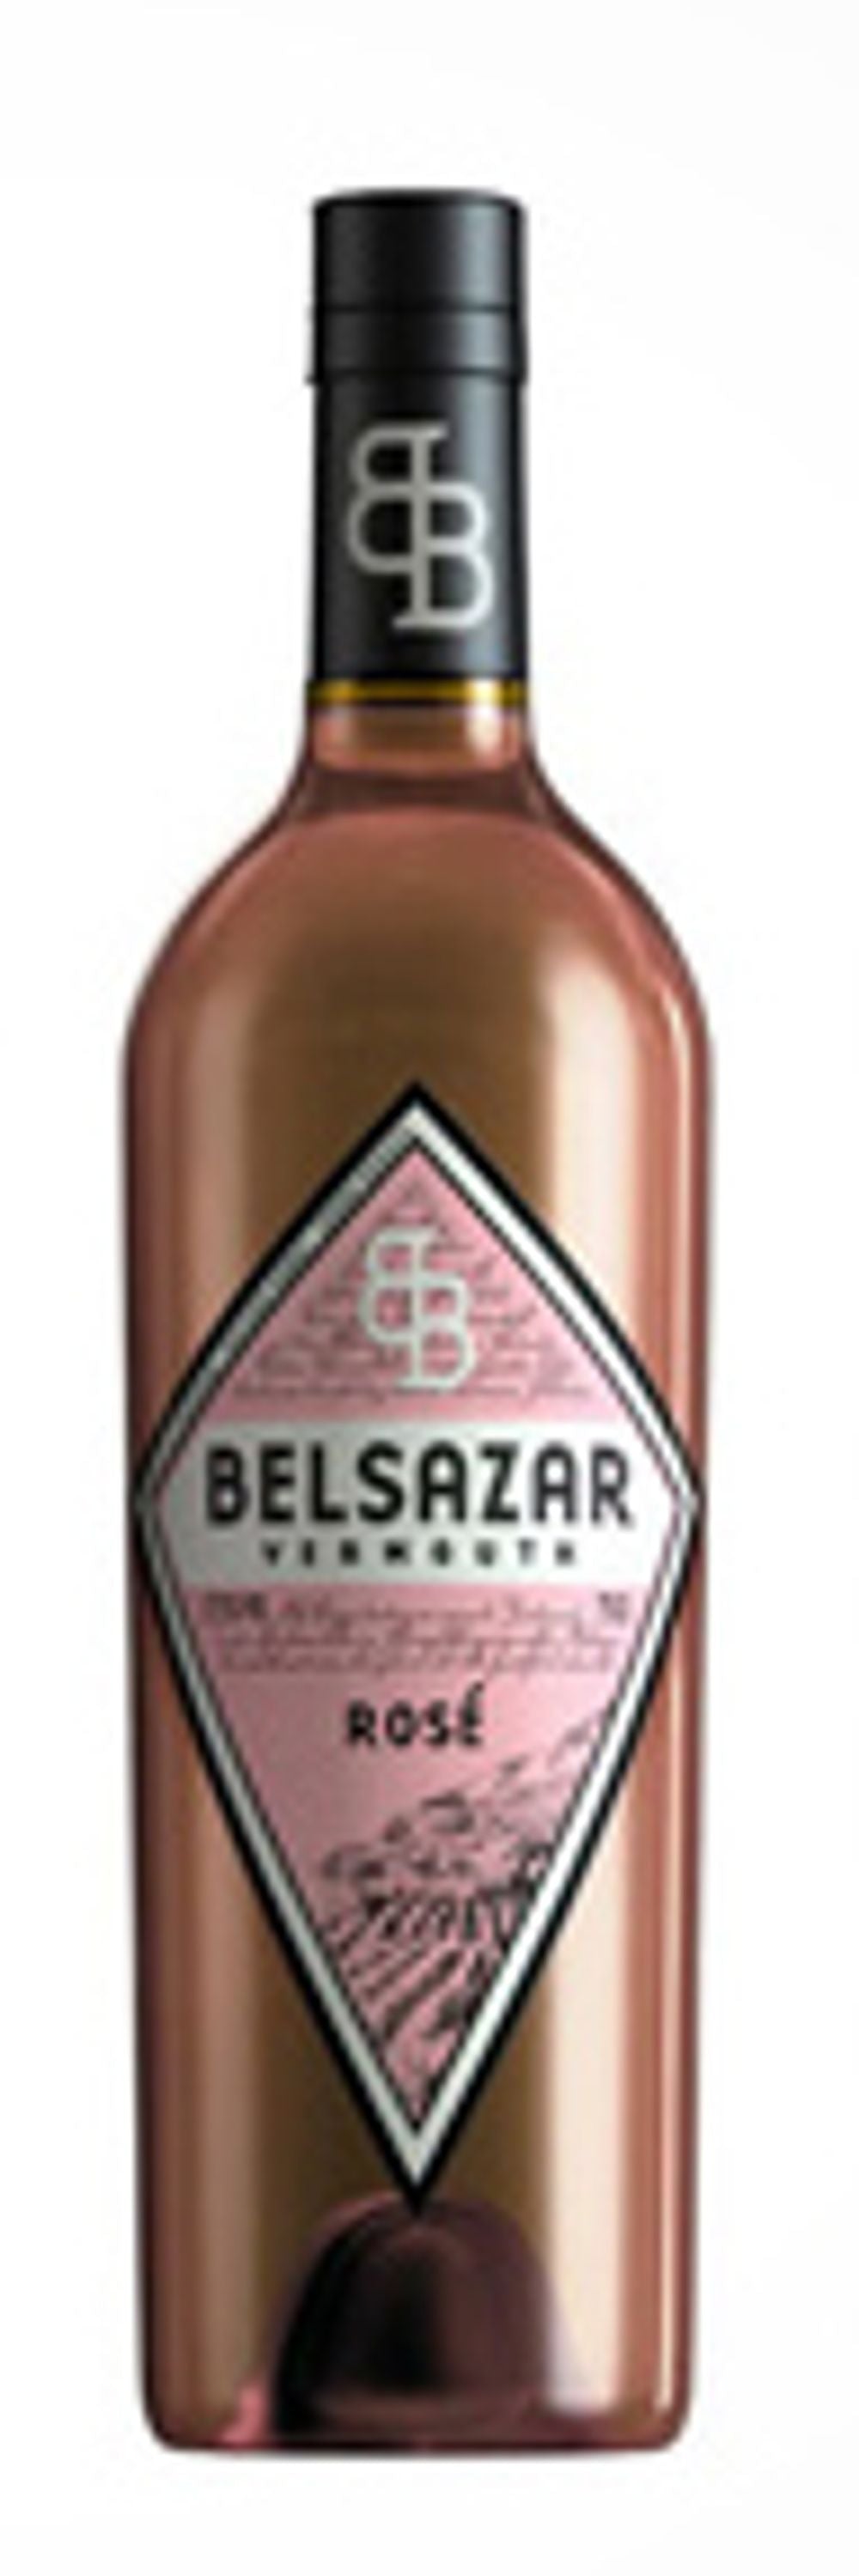 Belsazar Vermouth Rosé 0,7l, alk. 17,5 tilavuusprosenttia.